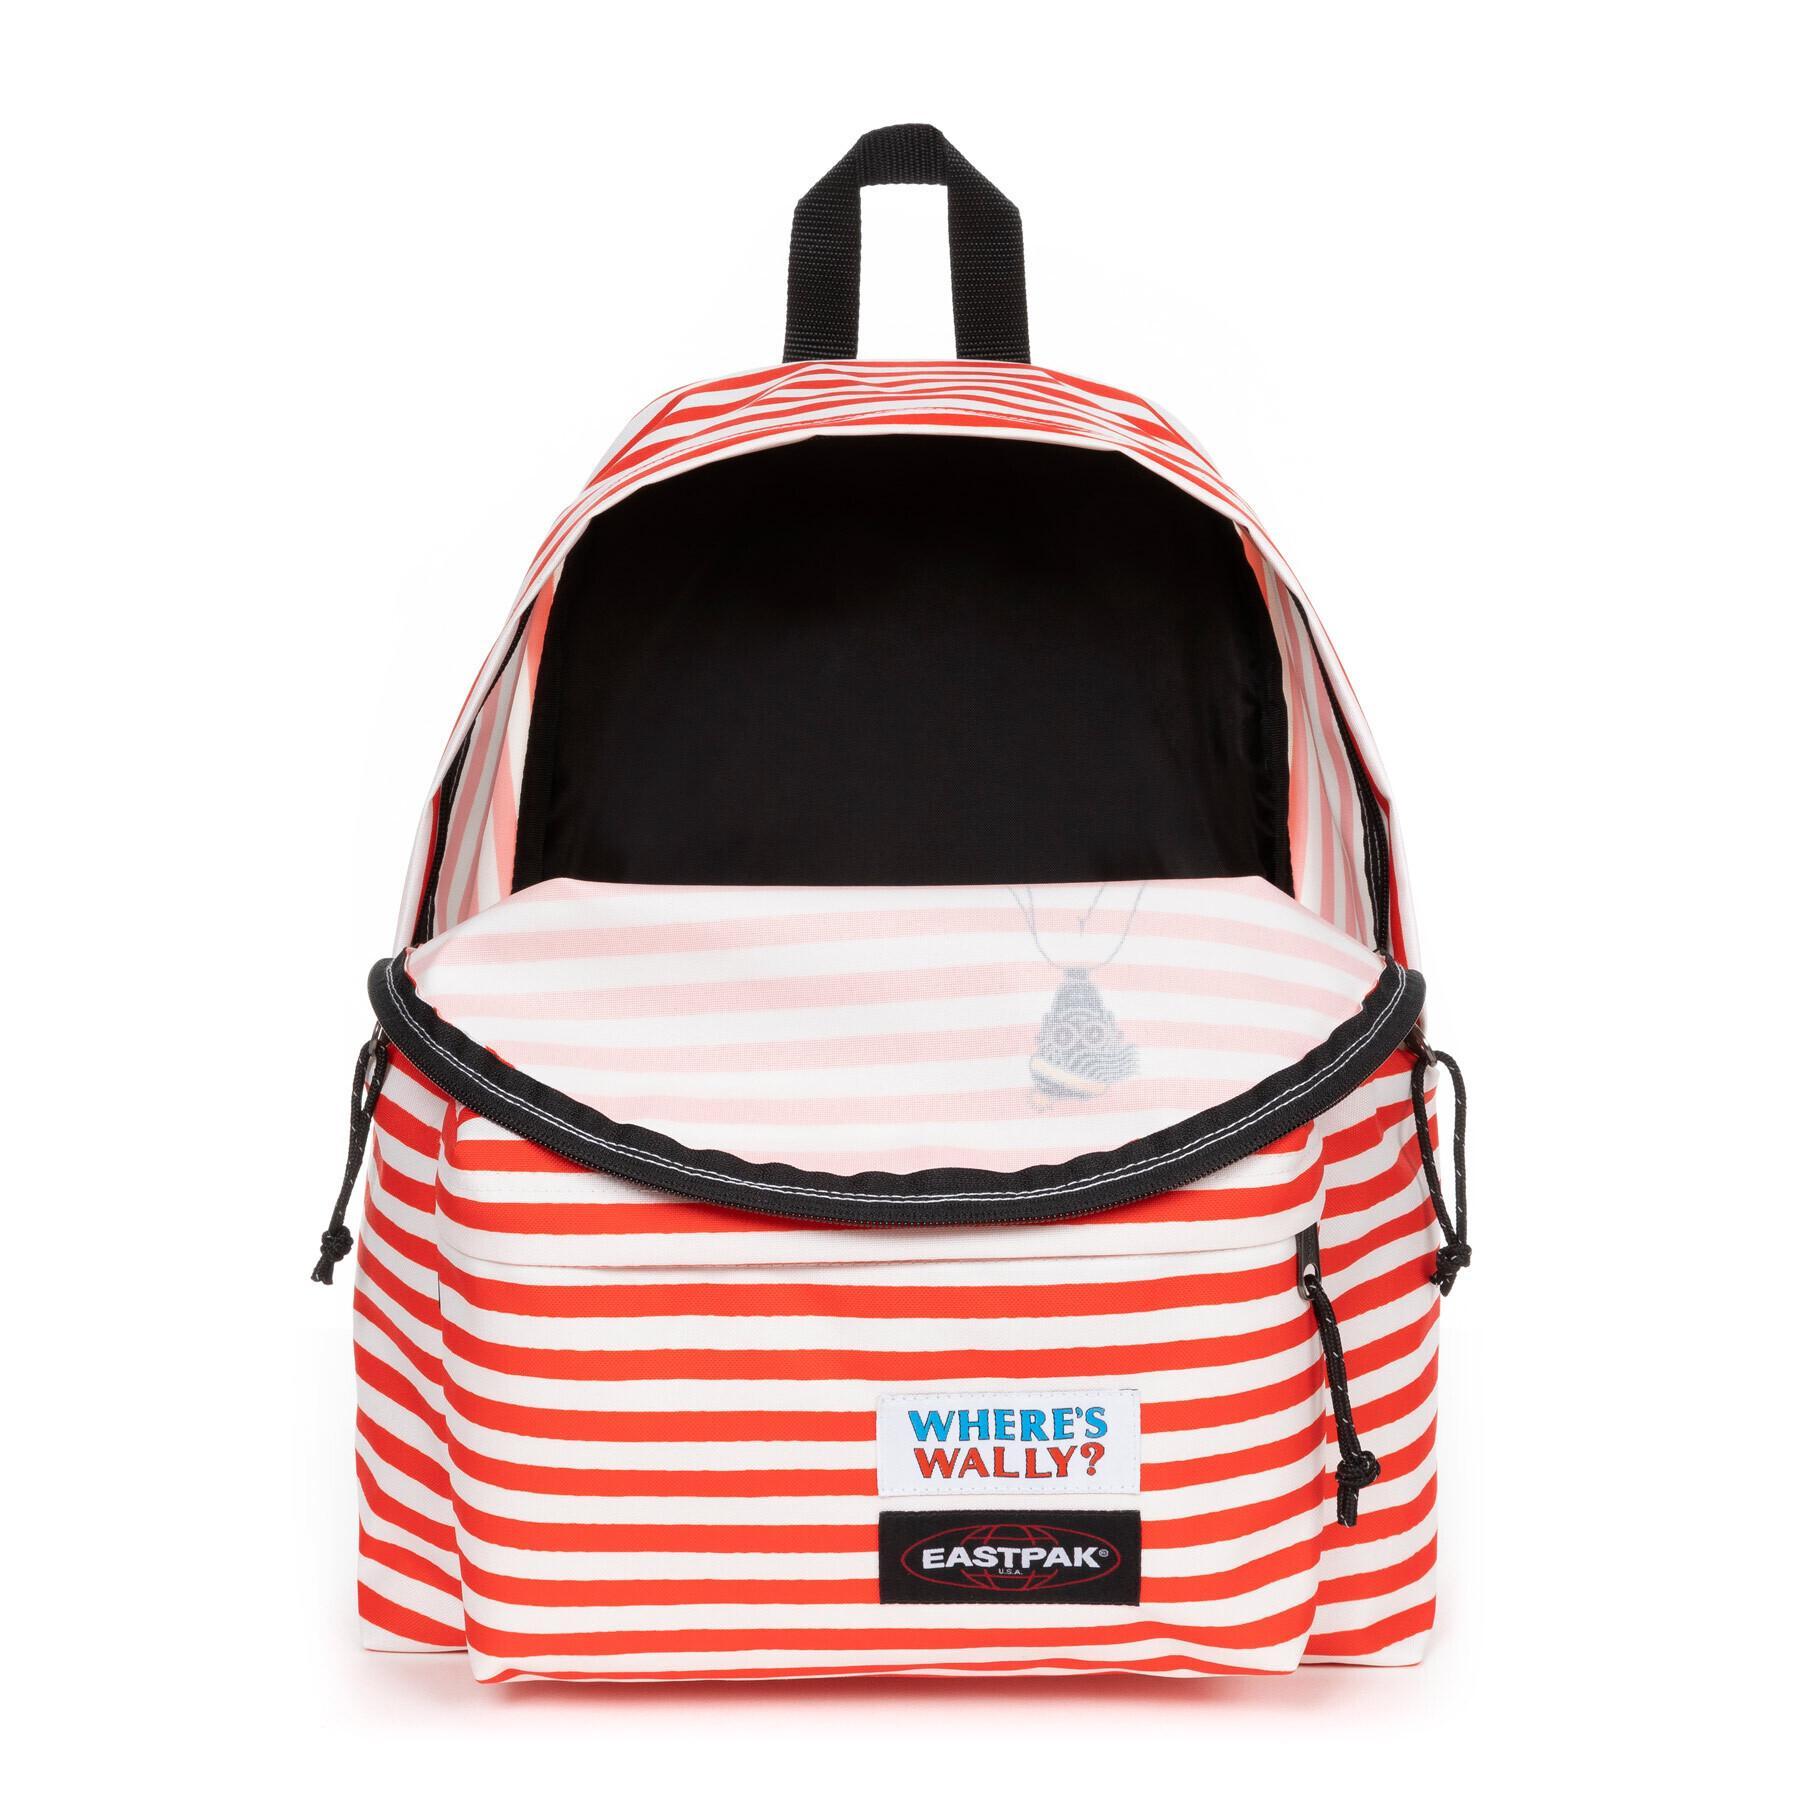 Besmetten Kapitein Brie blad Children's backpack Eastpak Padded Pak'r - Backpacks - Bags - Equipment